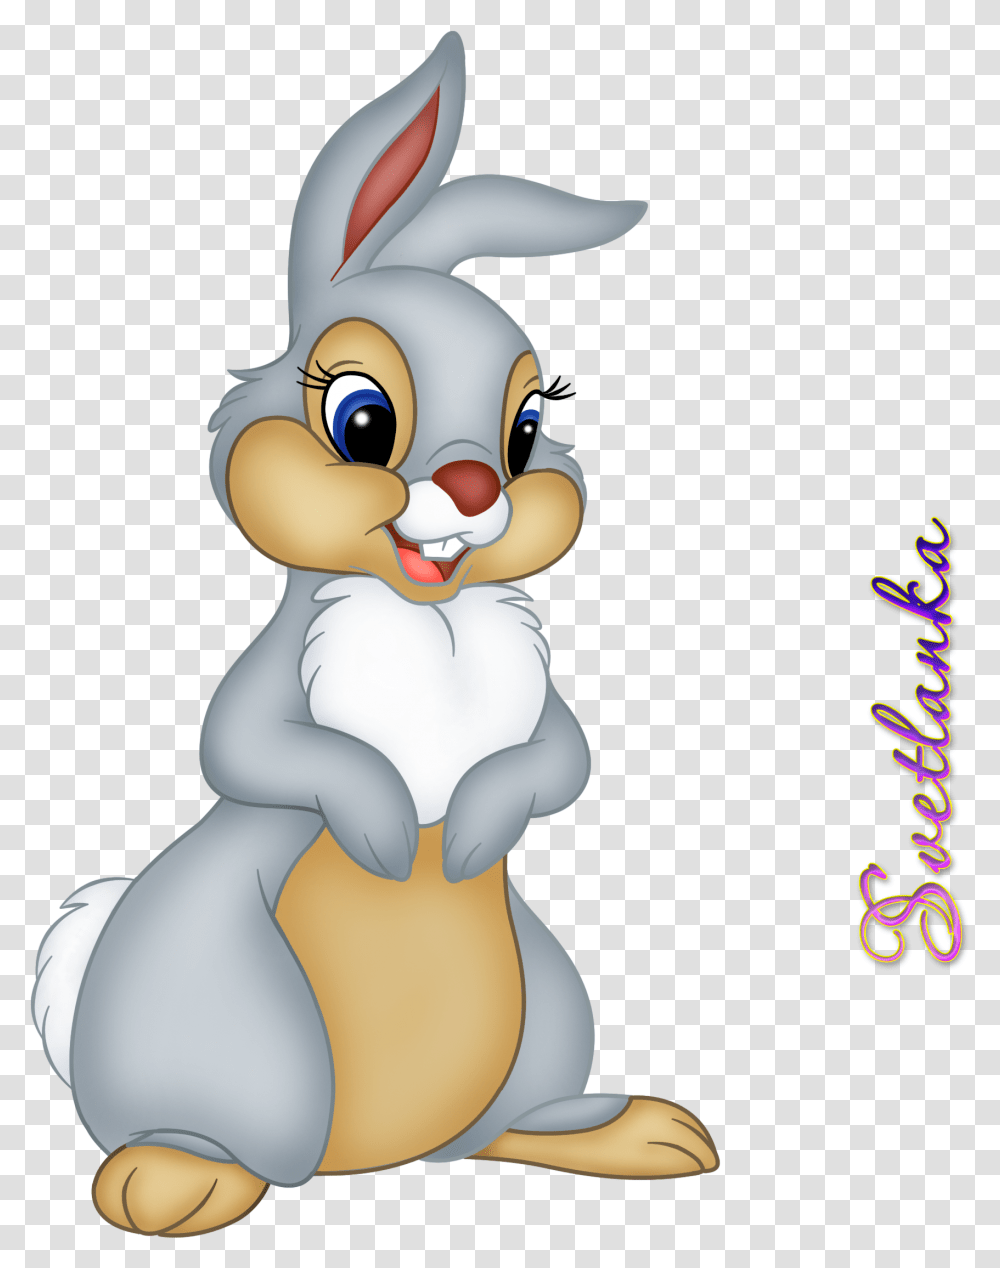 Clipart Of Bunnies Cartoon Bambi Disney Bunny, Toy, Mammal, Animal, Pet Transparent Png